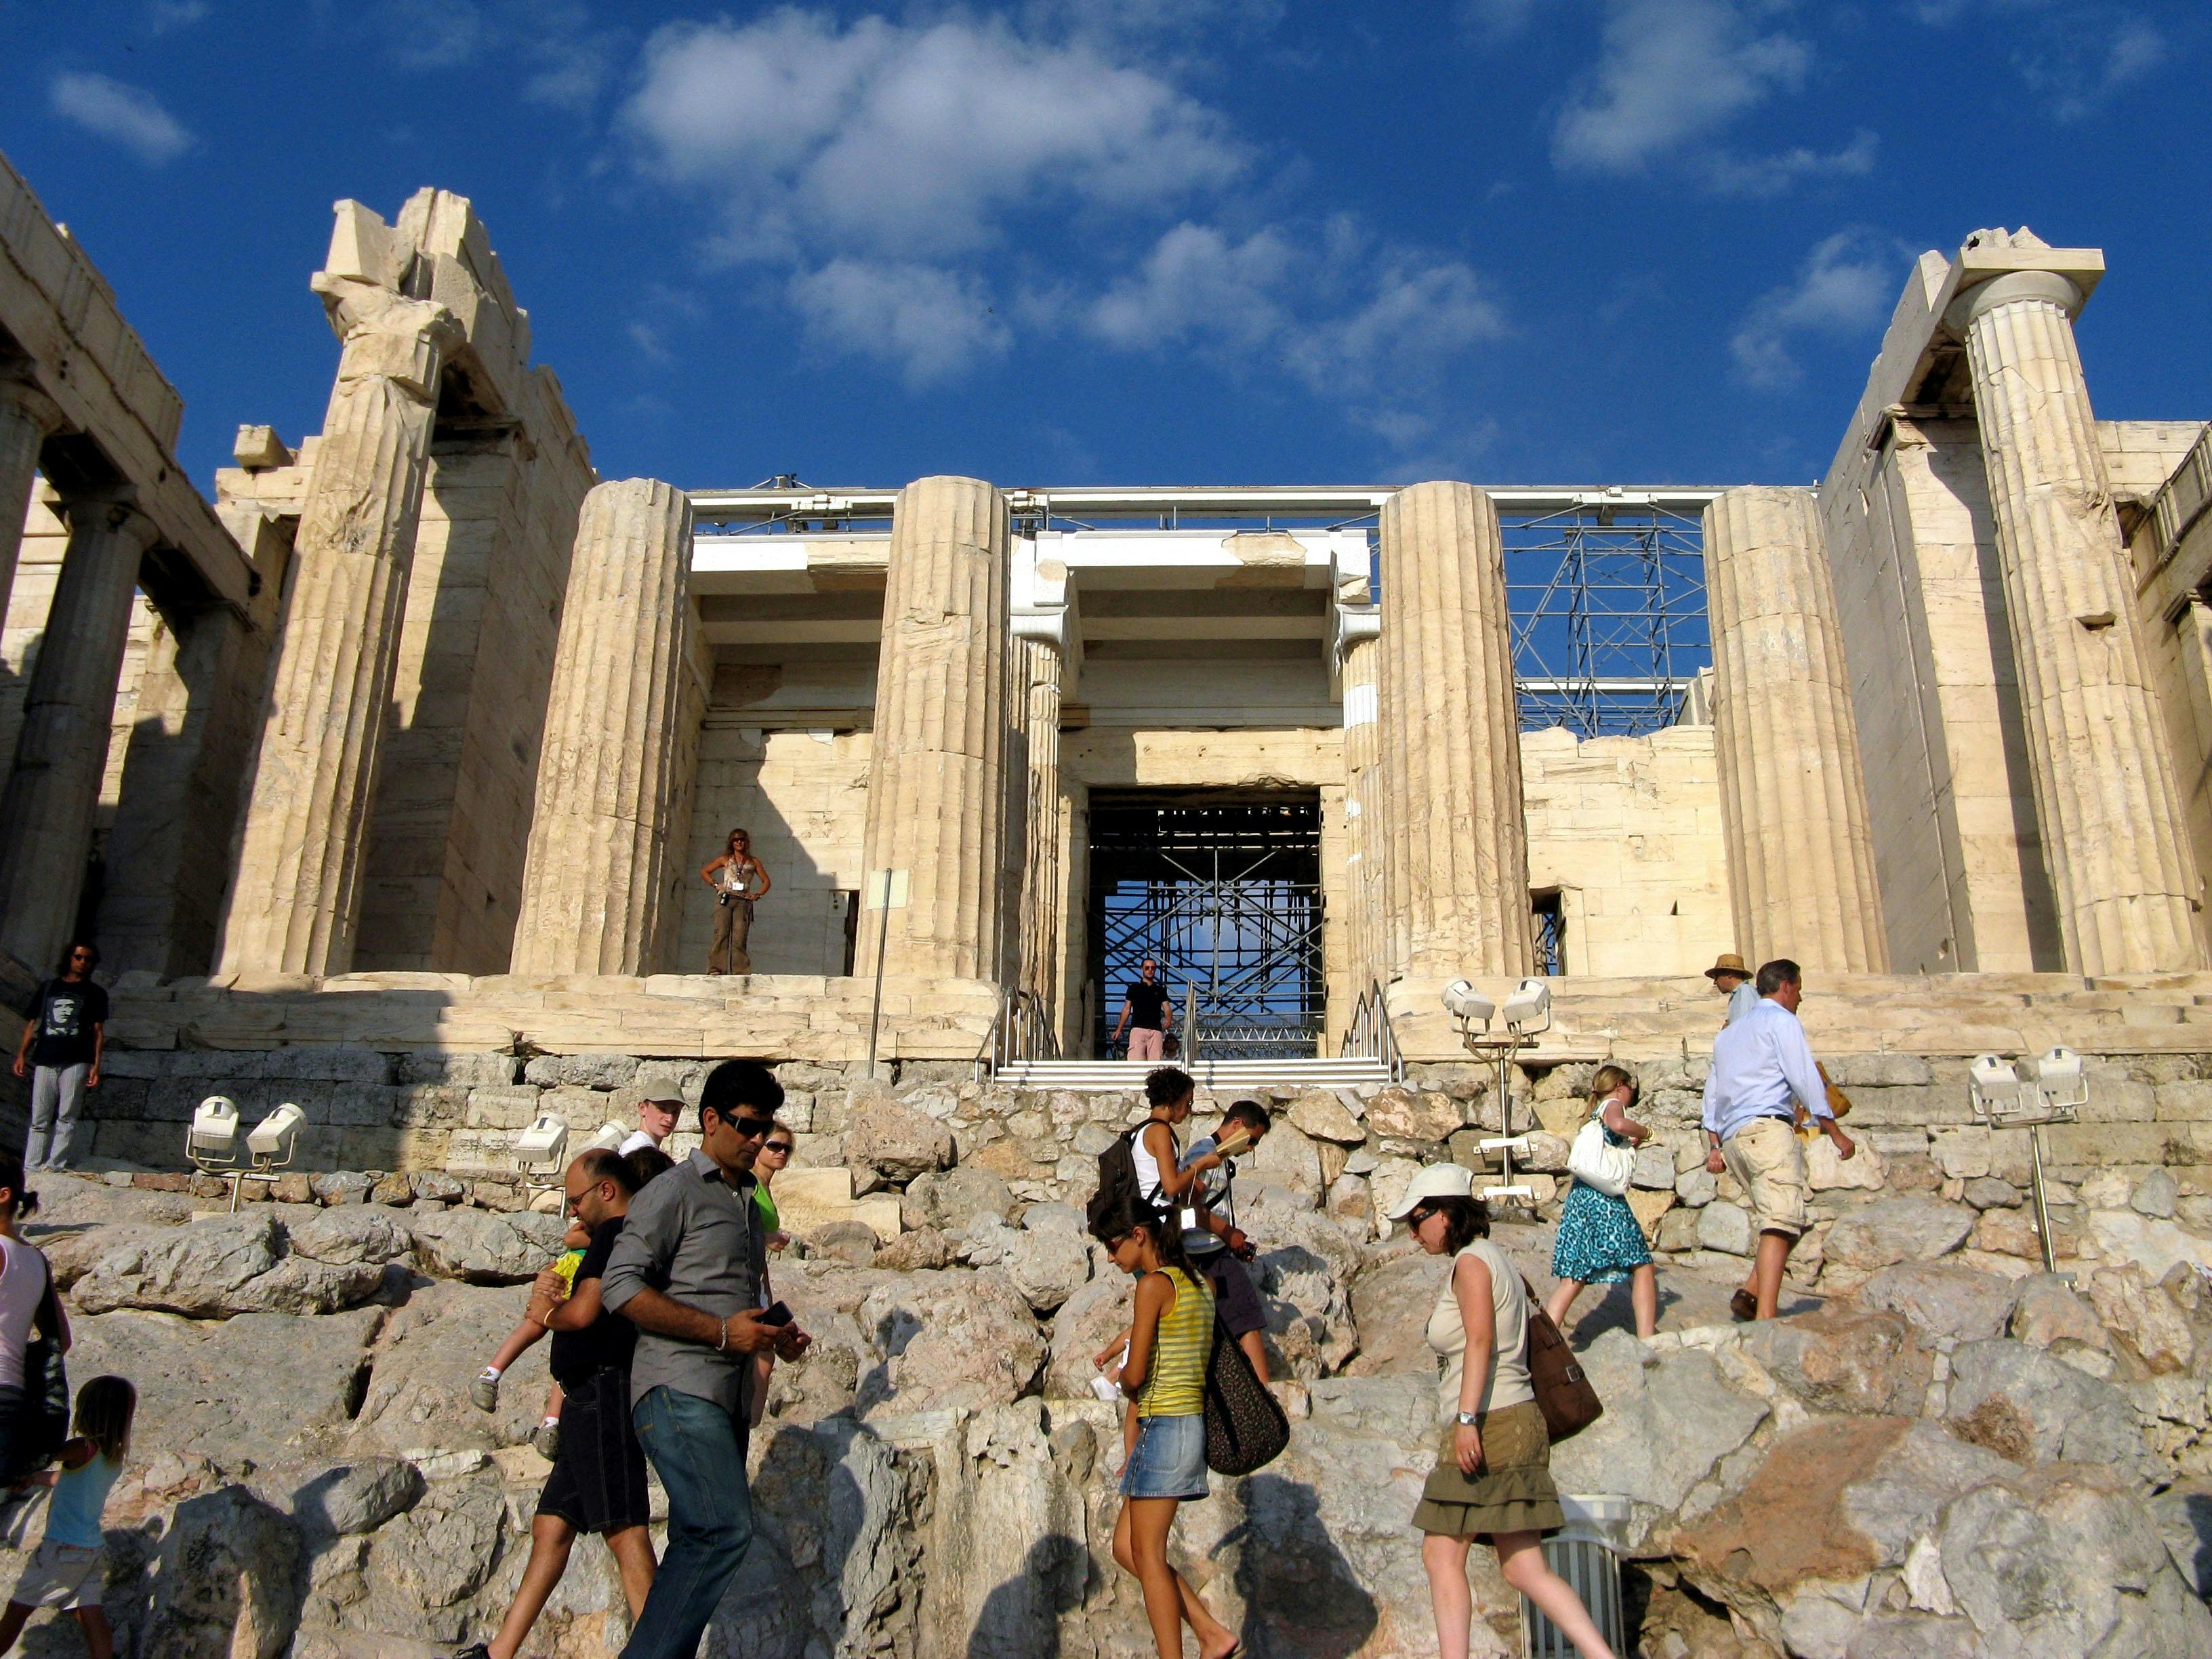 Visite guidée à pied de l'Acropole et du nouveau musée de l'Acropole à Athènes